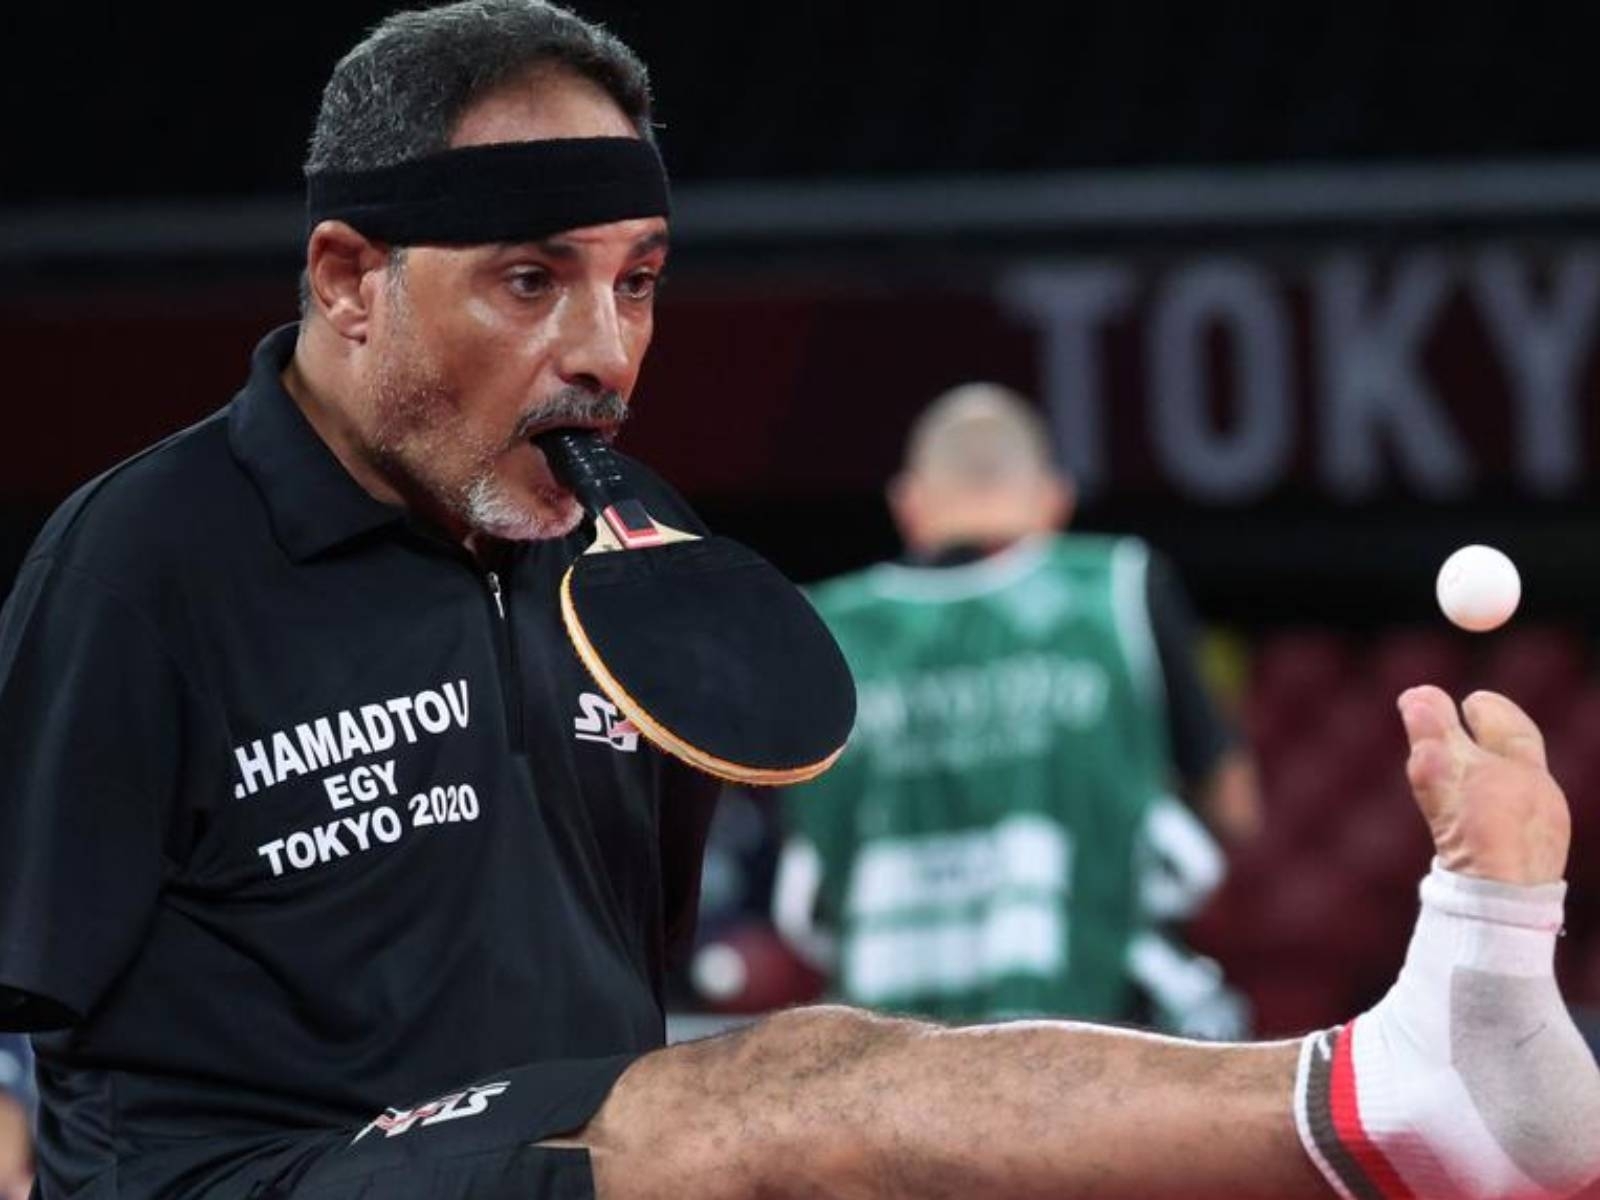 帕奧／ 埃及桌球選手 Ibrahim Hamadtou 兒時失去雙臂被嘲諷，「嘴咬球拍、腳發球」讓人讚嘆！